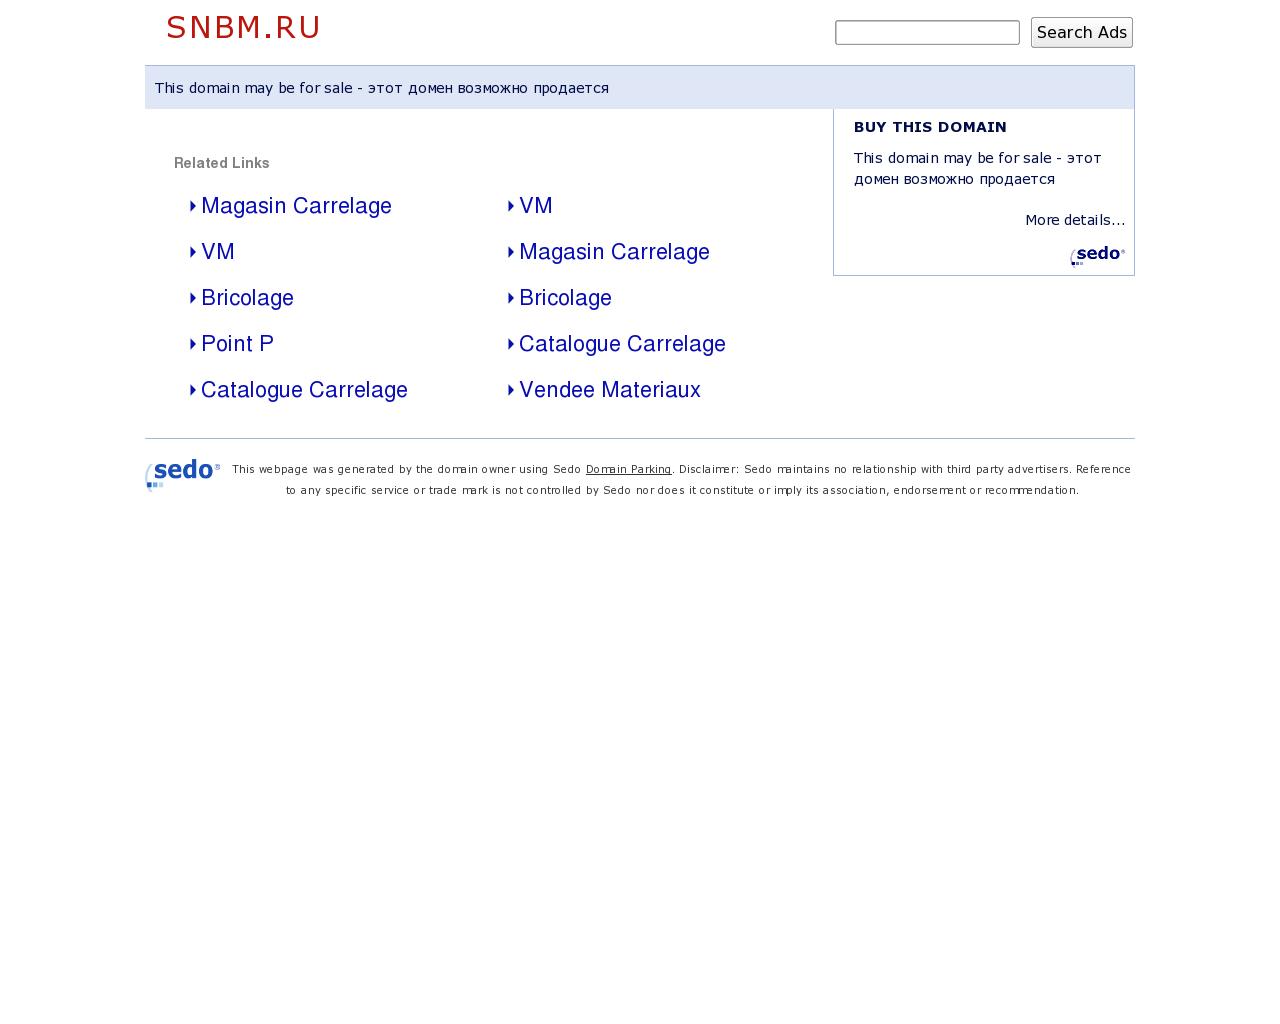 Изображение сайта snbm.ru в разрешении 1280x1024